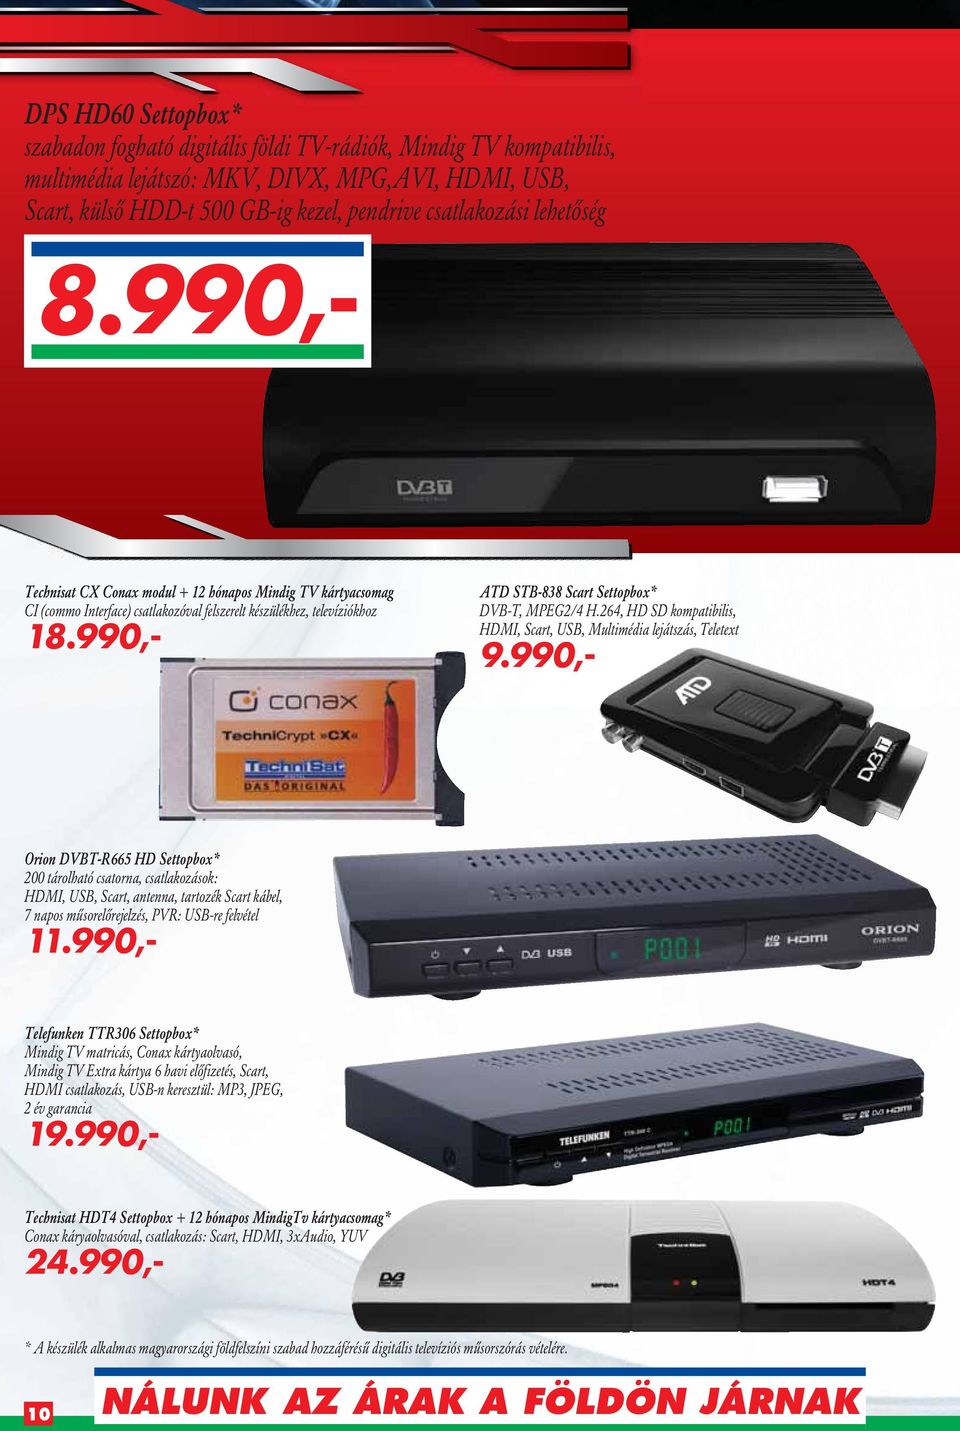 990,- ATD STB-838 Scart Settopbox* DVB-T, MPEG2/4 H.264, HD SD kompatibilis, HDMI, Scart, USB, Multimédia lejátszás, Teletext 9.